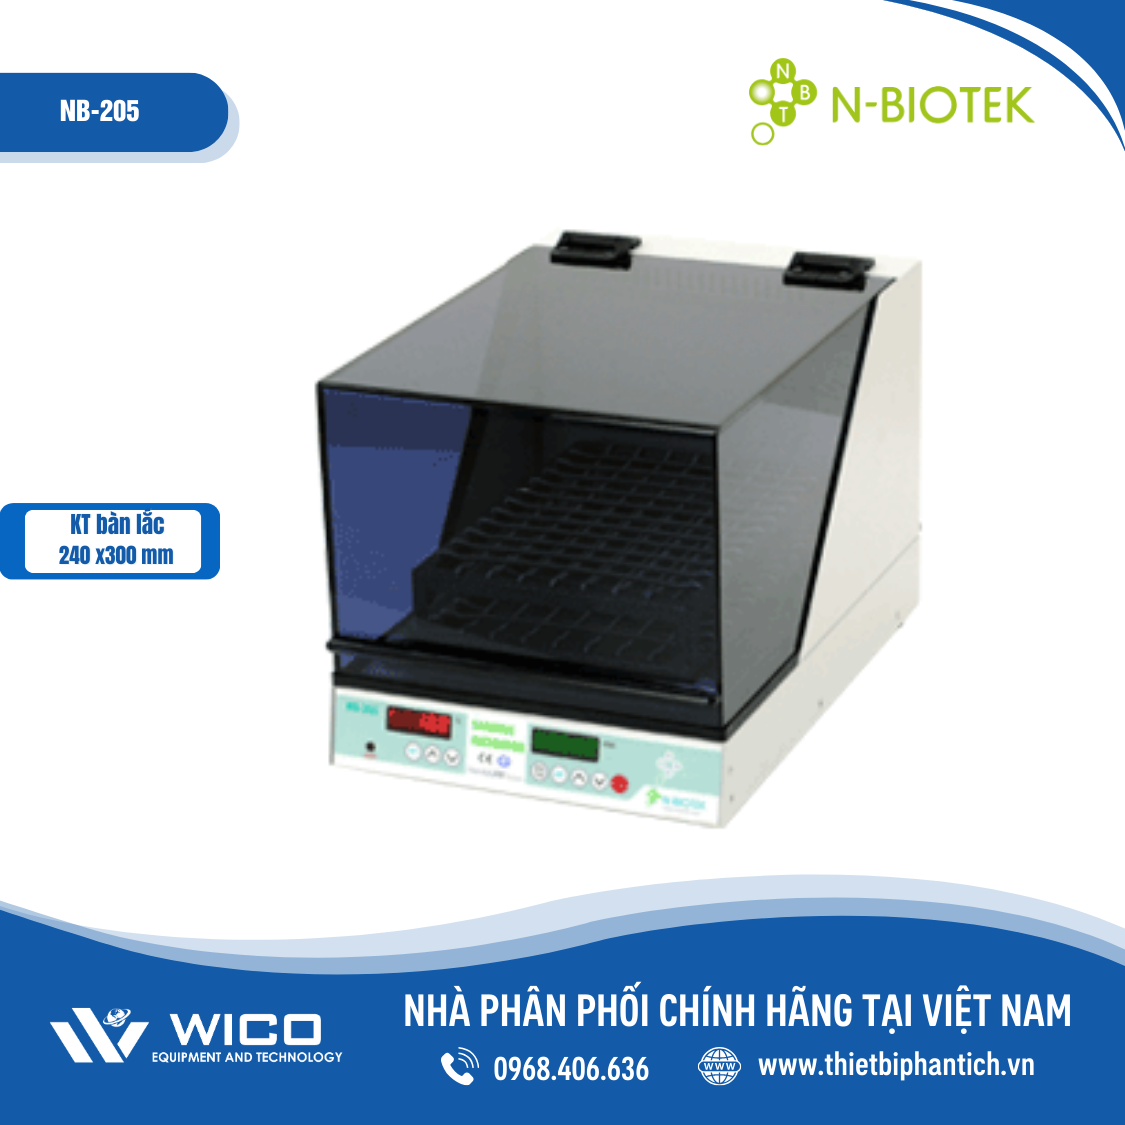 Máy lắc ổn nhiệt N-biotek NB-205